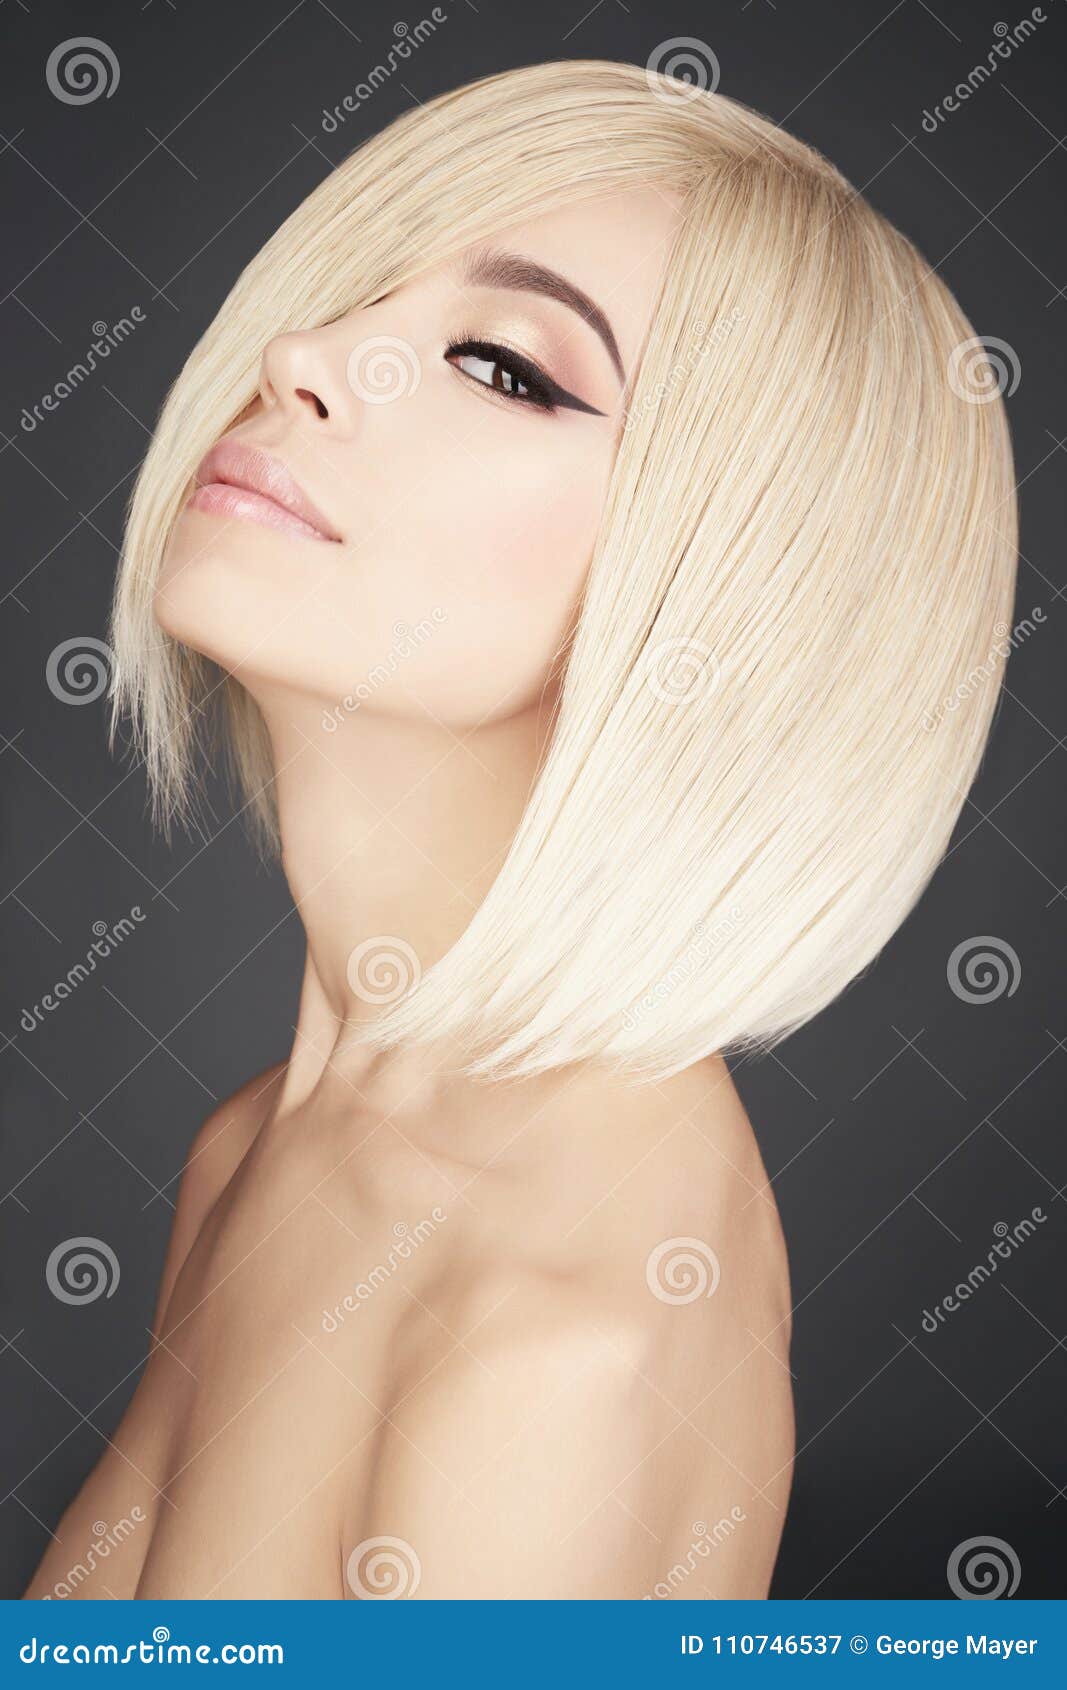 blonde hair woman Asian